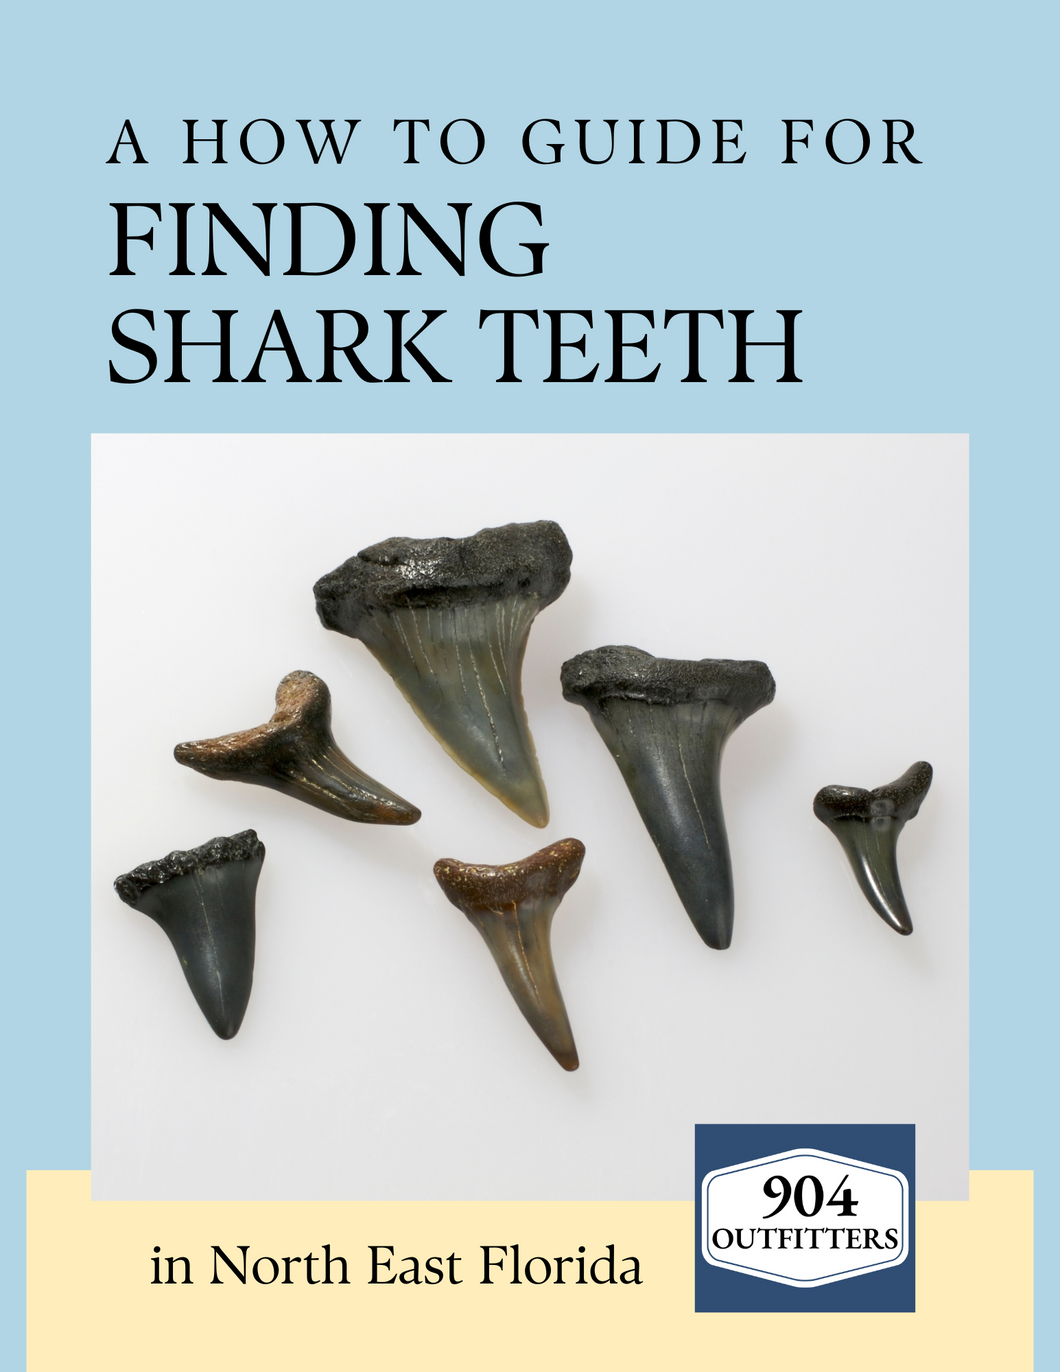 How to Find Shark Teeth